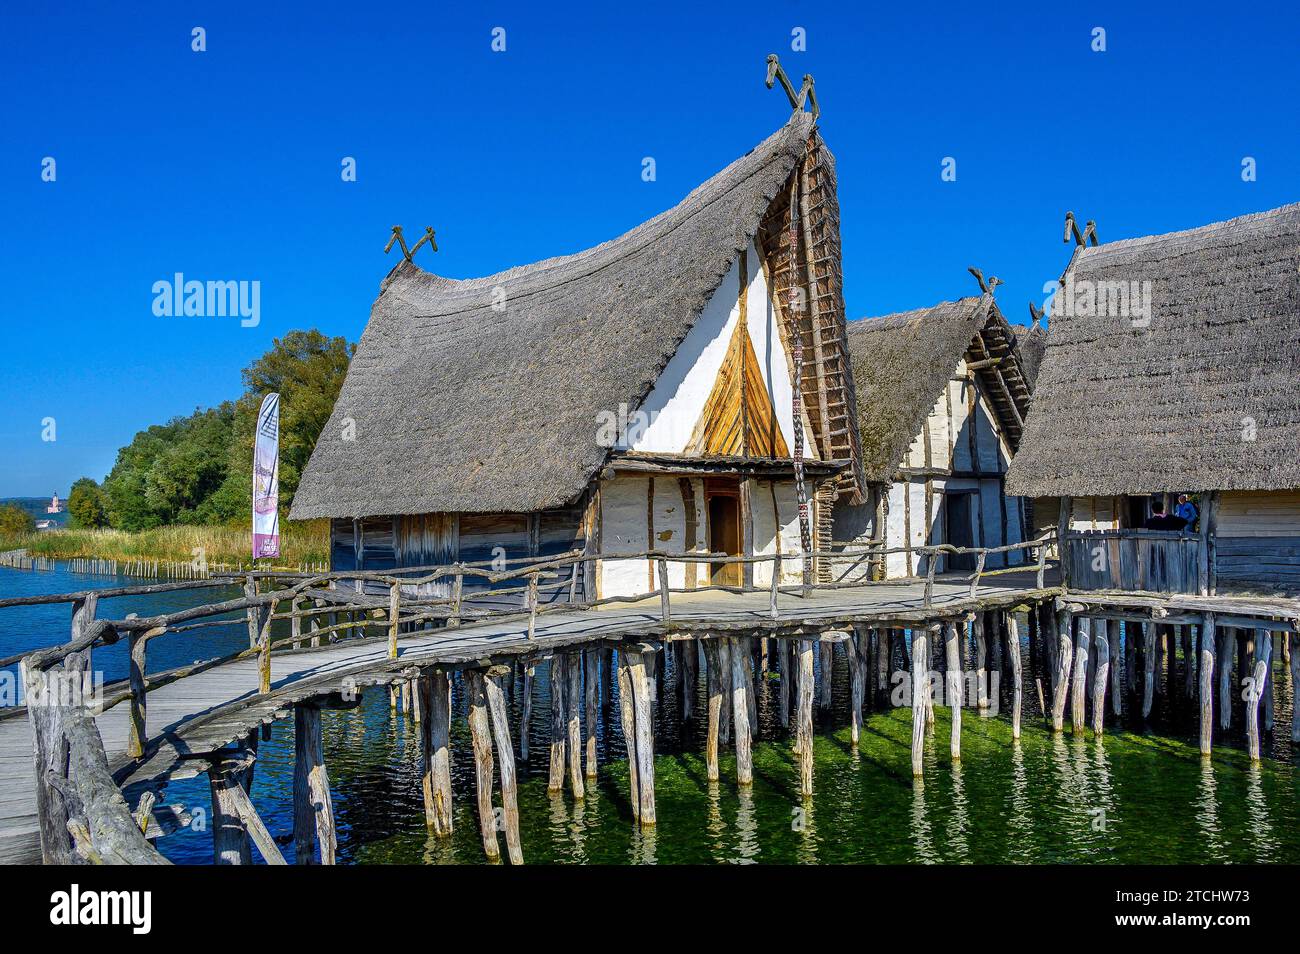 Pfahlbauten am Bodensee, eine Touristenattraktion der Region und das älteste archäologische Freilichtmuseum Deutschlands Stockfoto